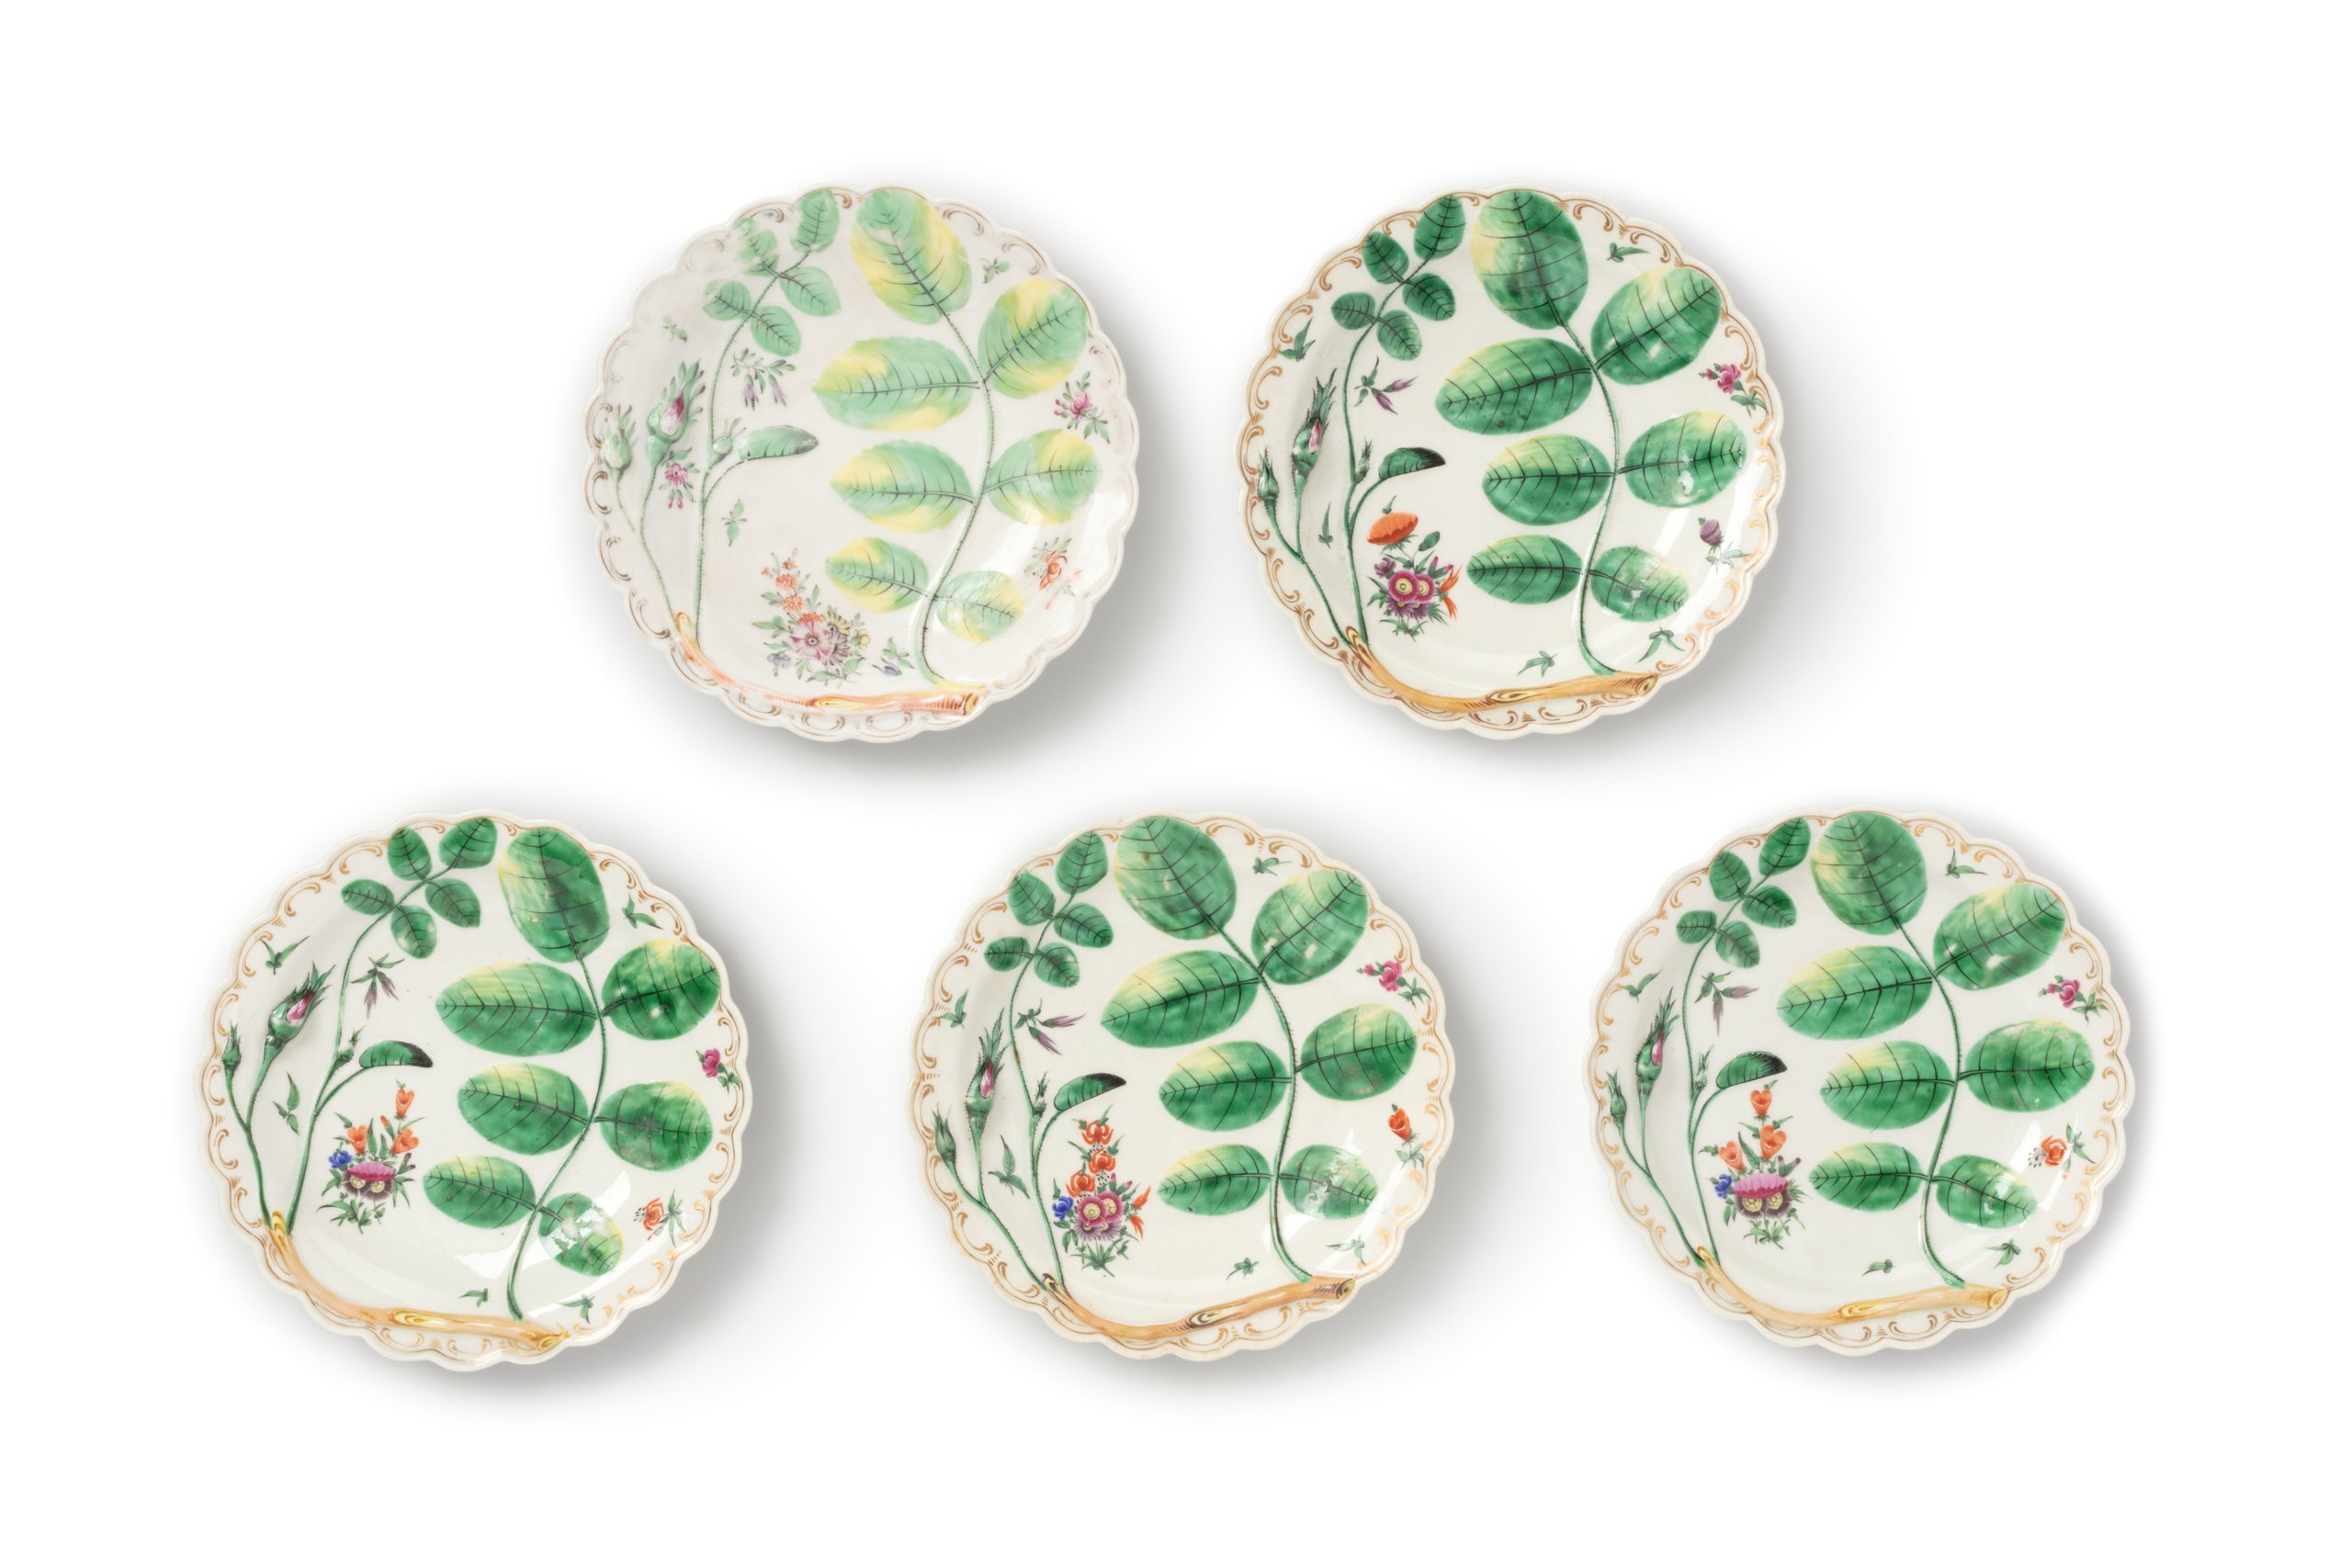 Royal Worcester 'Blind Earl' porcelain plates